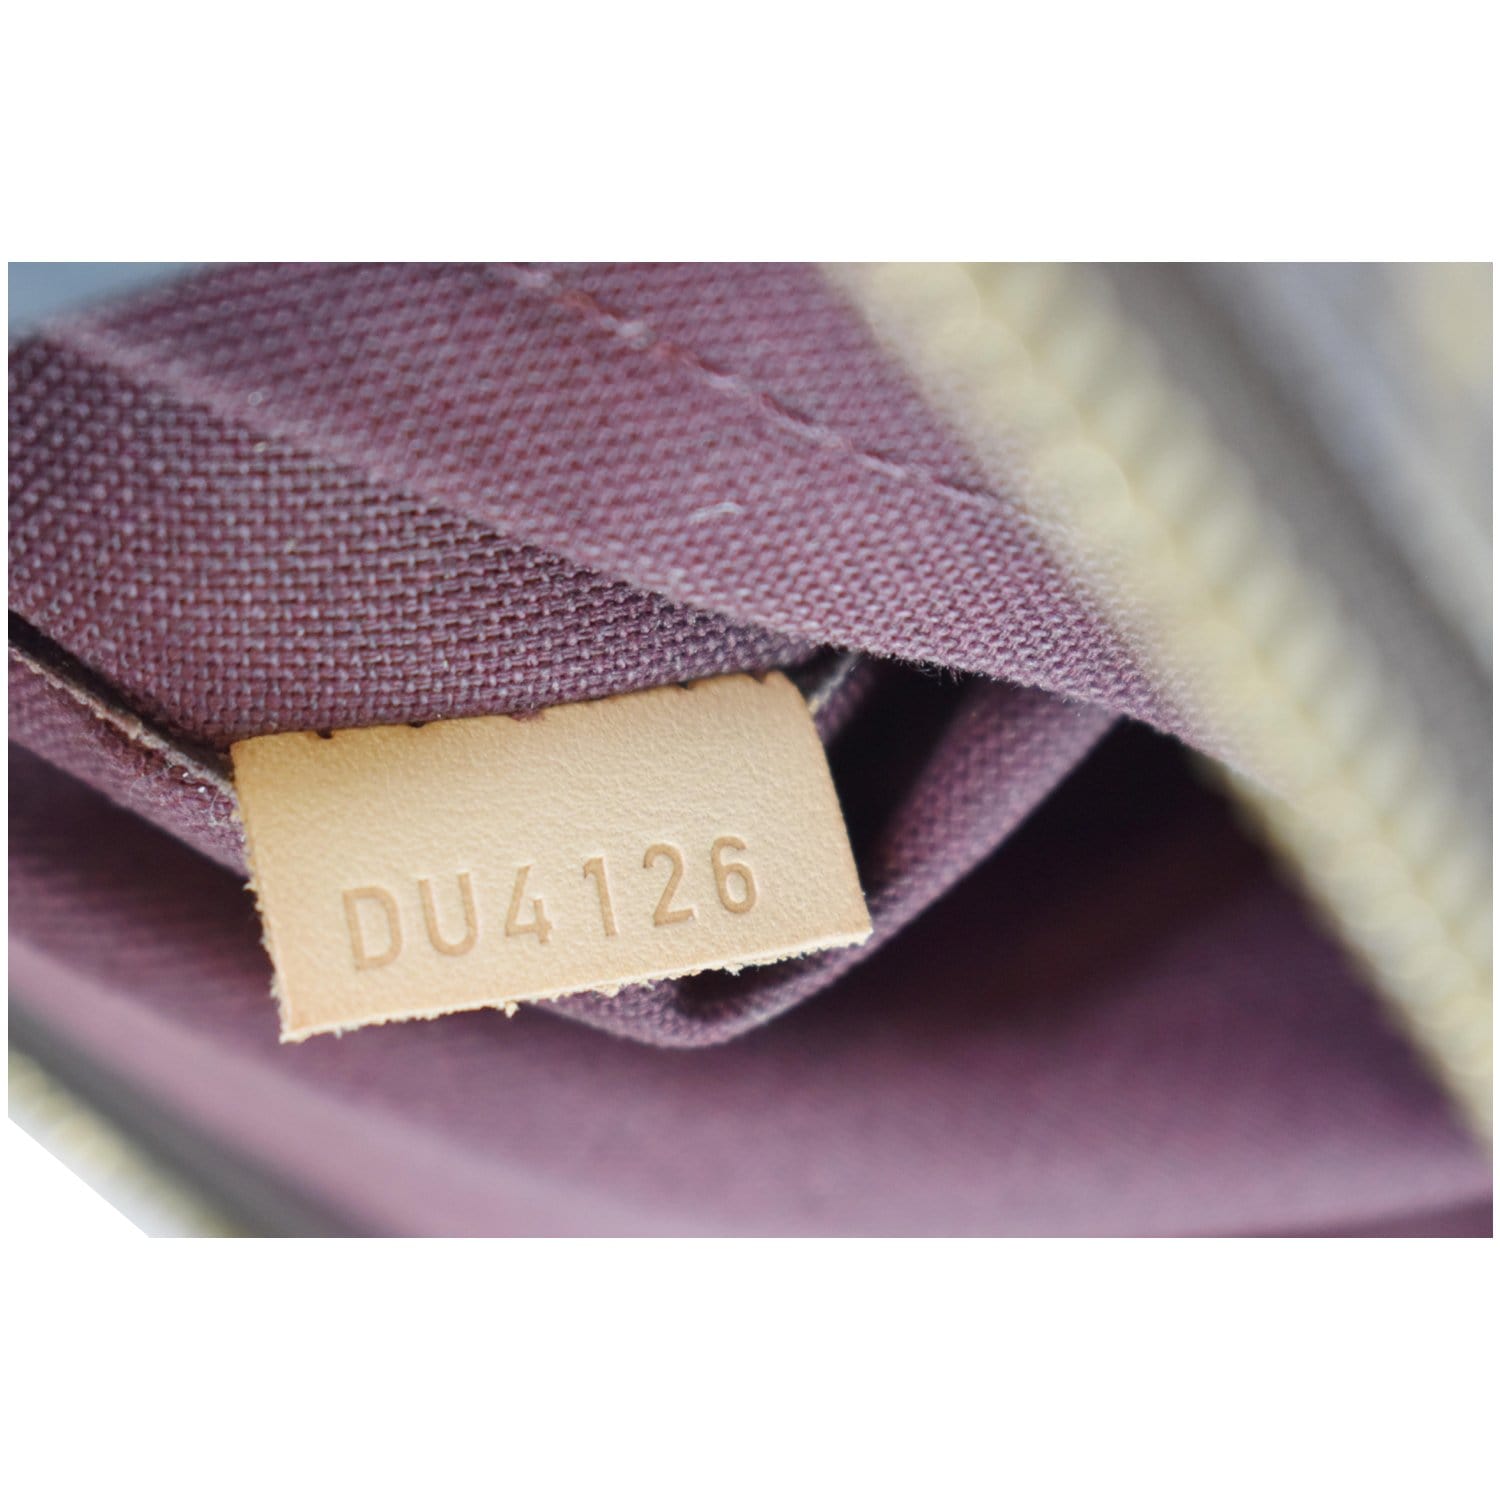 Berri cloth handbag Louis Vuitton Brown in Cloth - 22960889